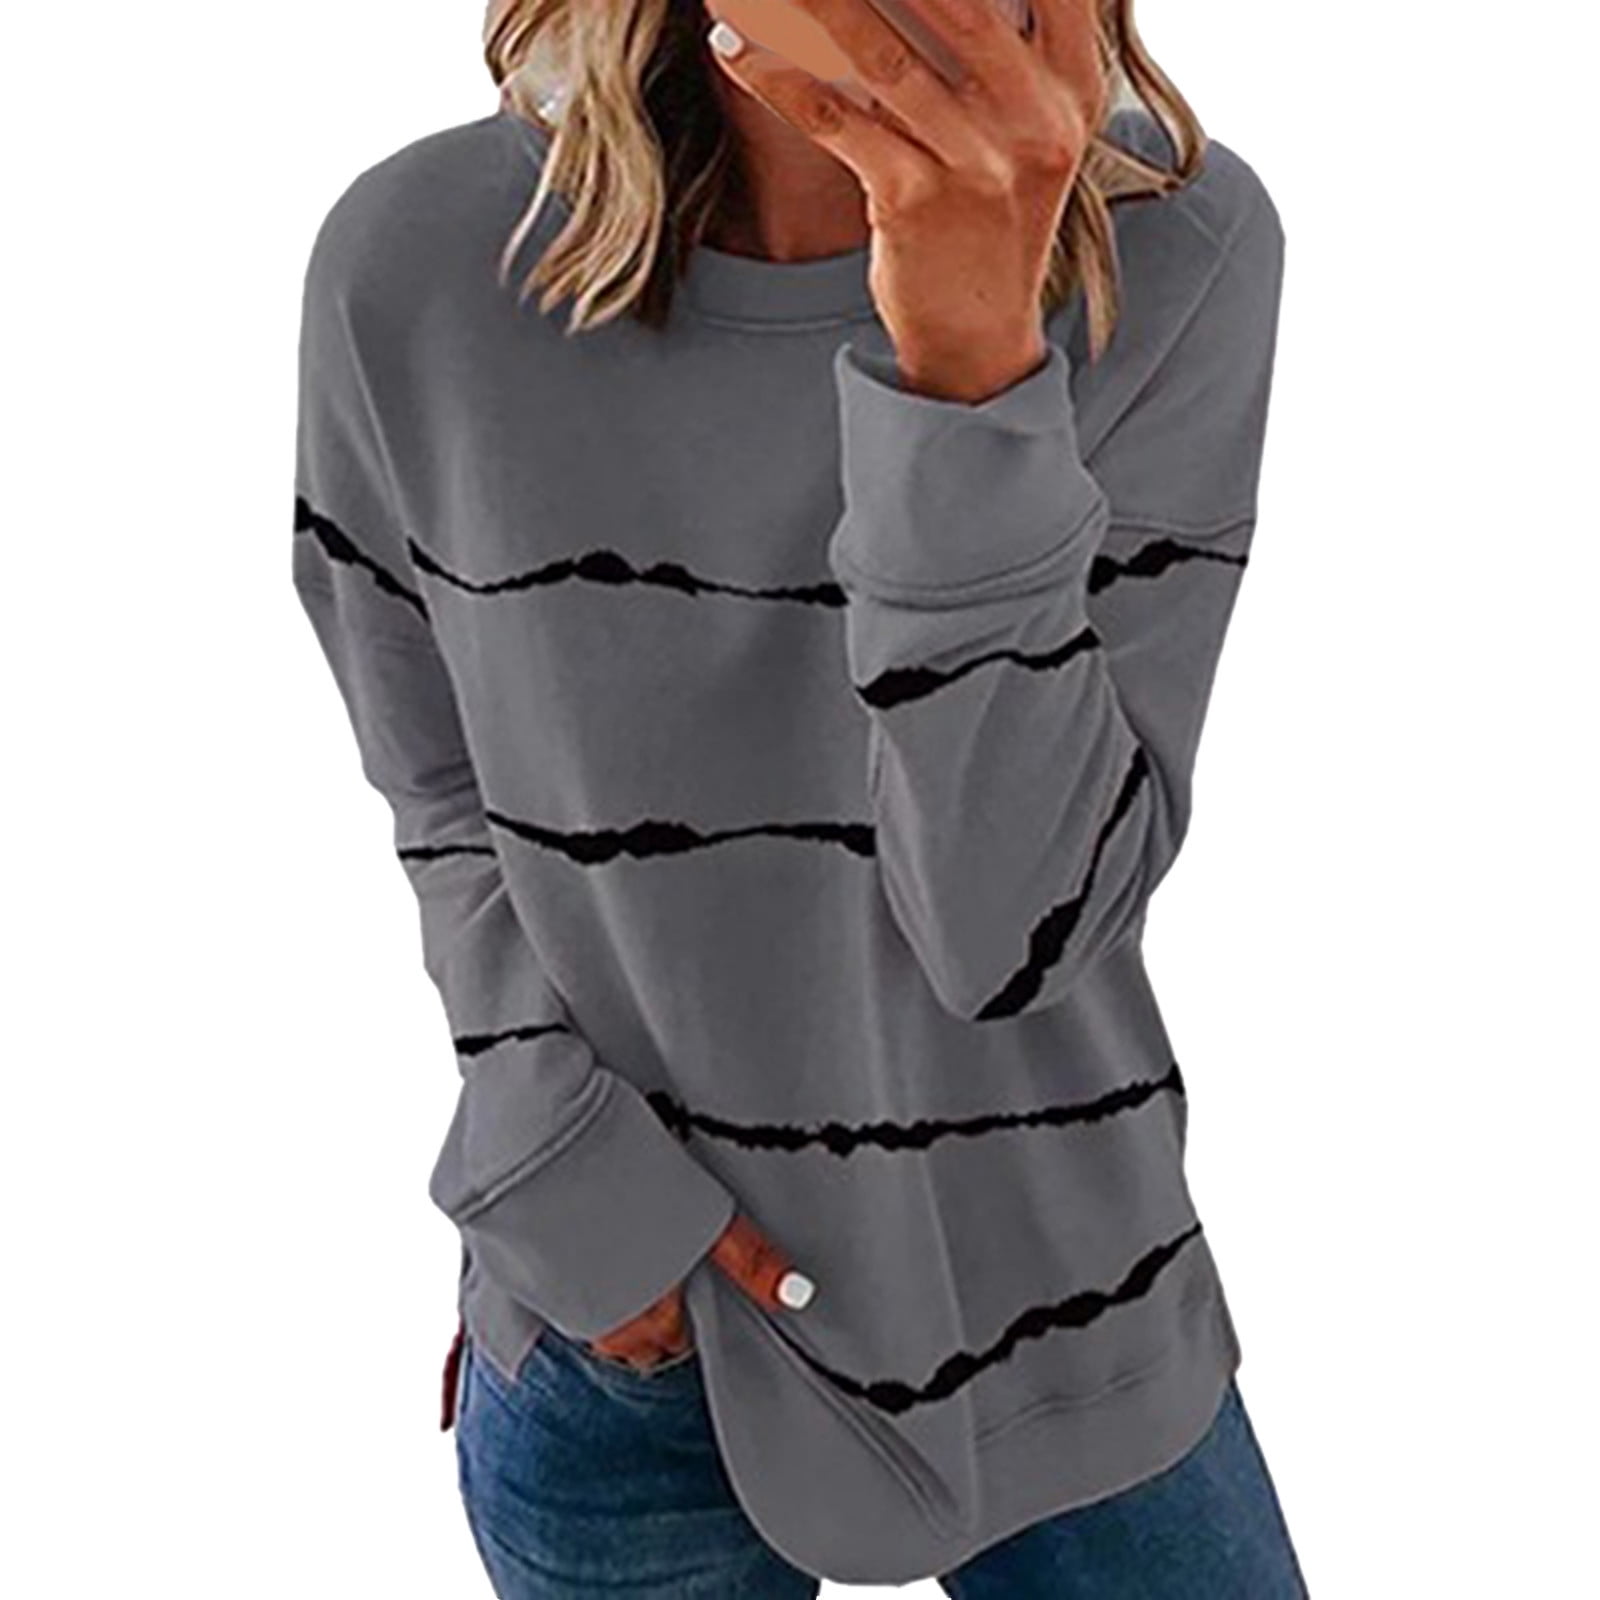 HSMQHJWE Womens Grey Zip Up Hoodie Cropped Workout Sweatshirt